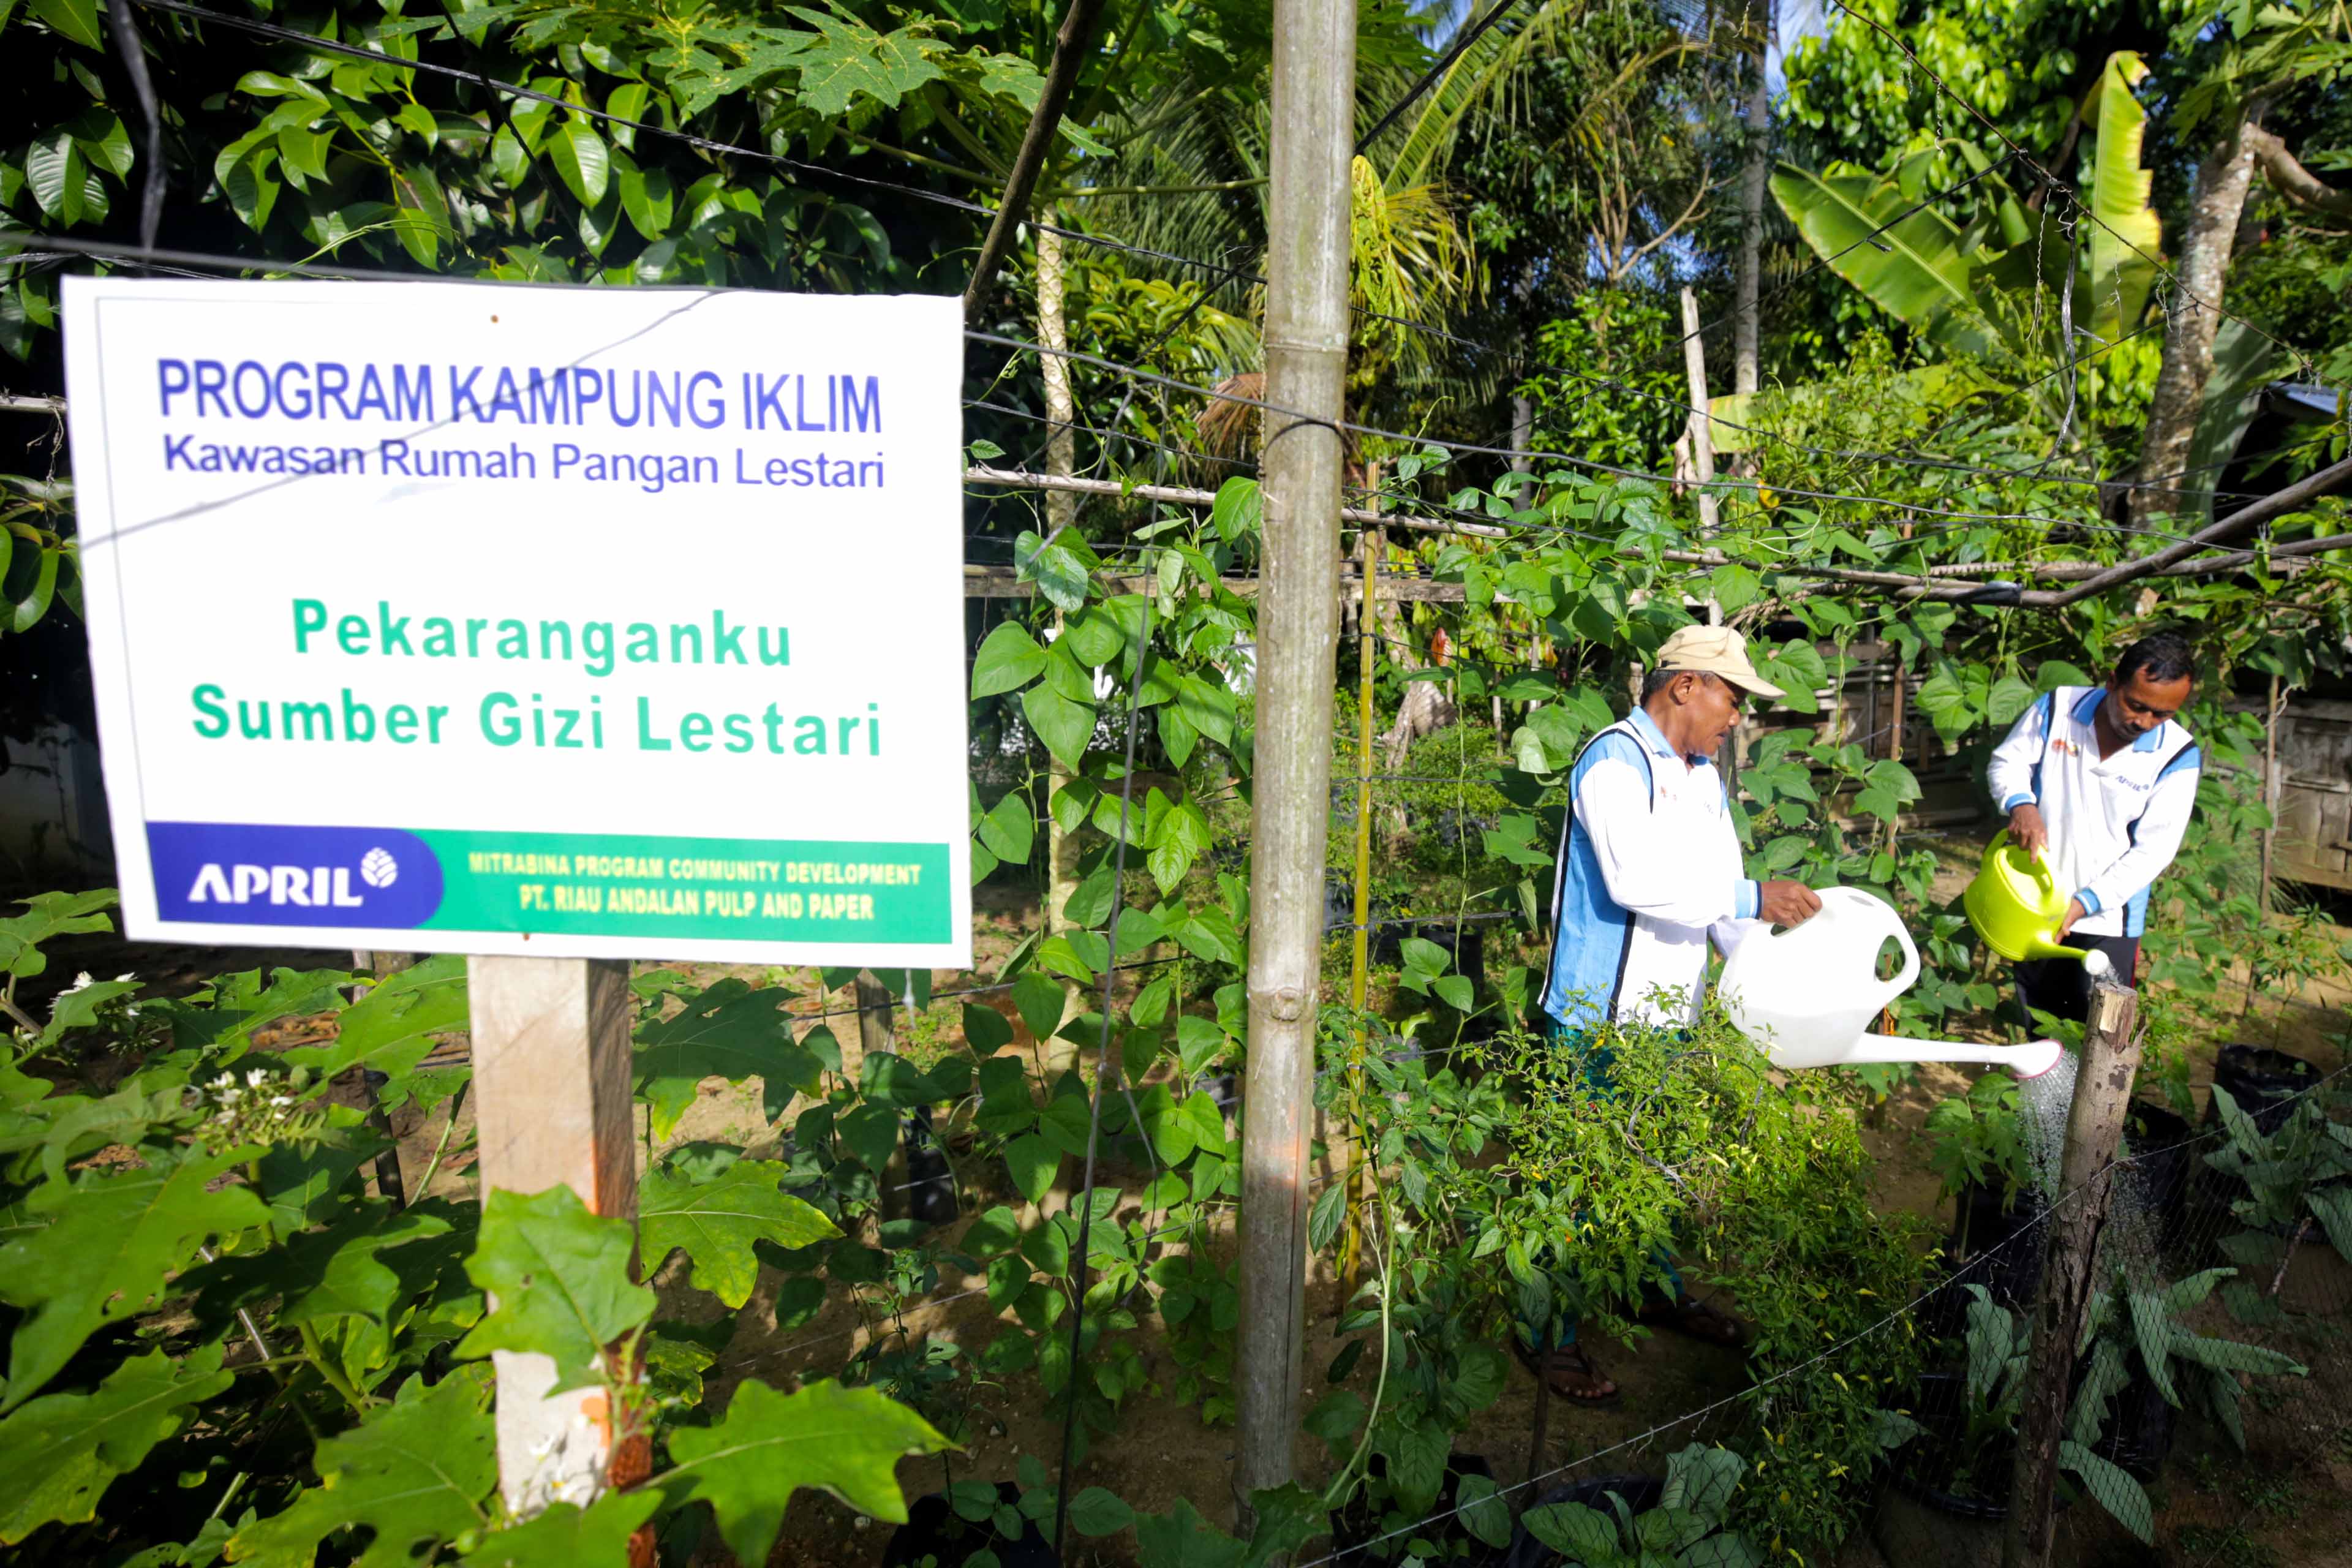 Program Kampung Iklim menjadi salah satu kebijakan Jokowi di bidang iklim dan lingkungan hidup